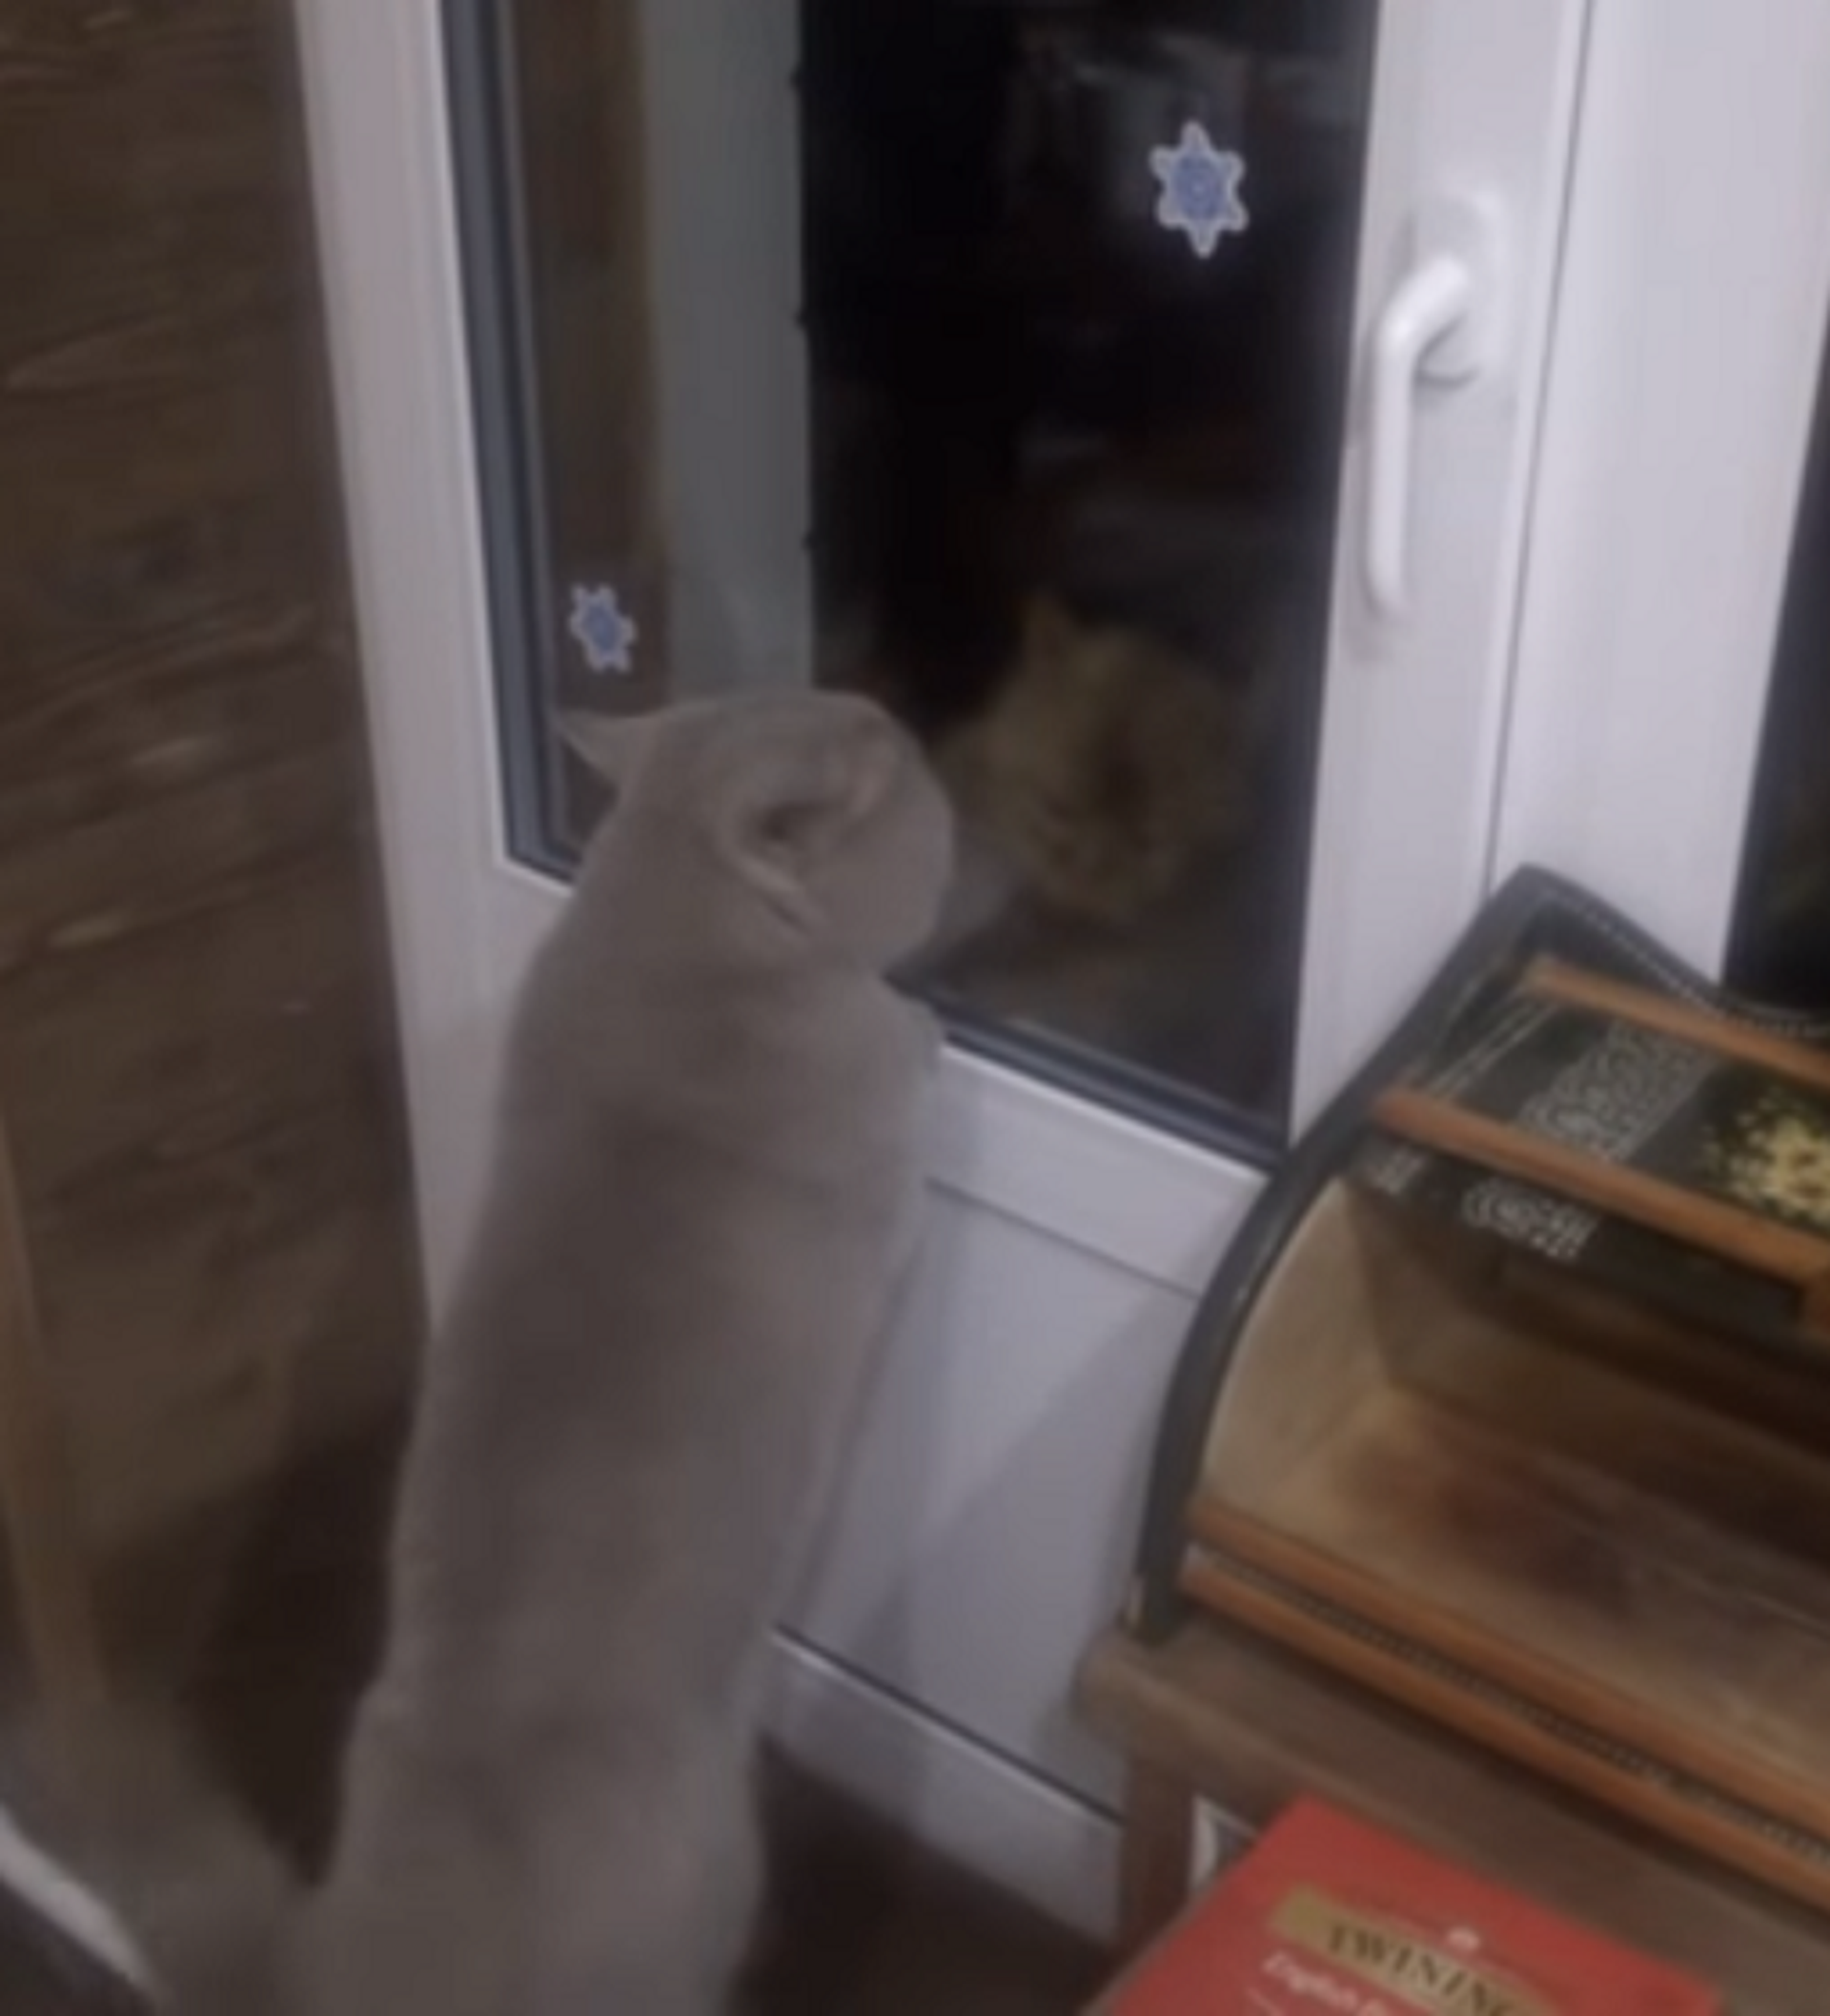 Говорящий кот просит хозяина открыть ему дверь, желая подраться с сородичем  – видео